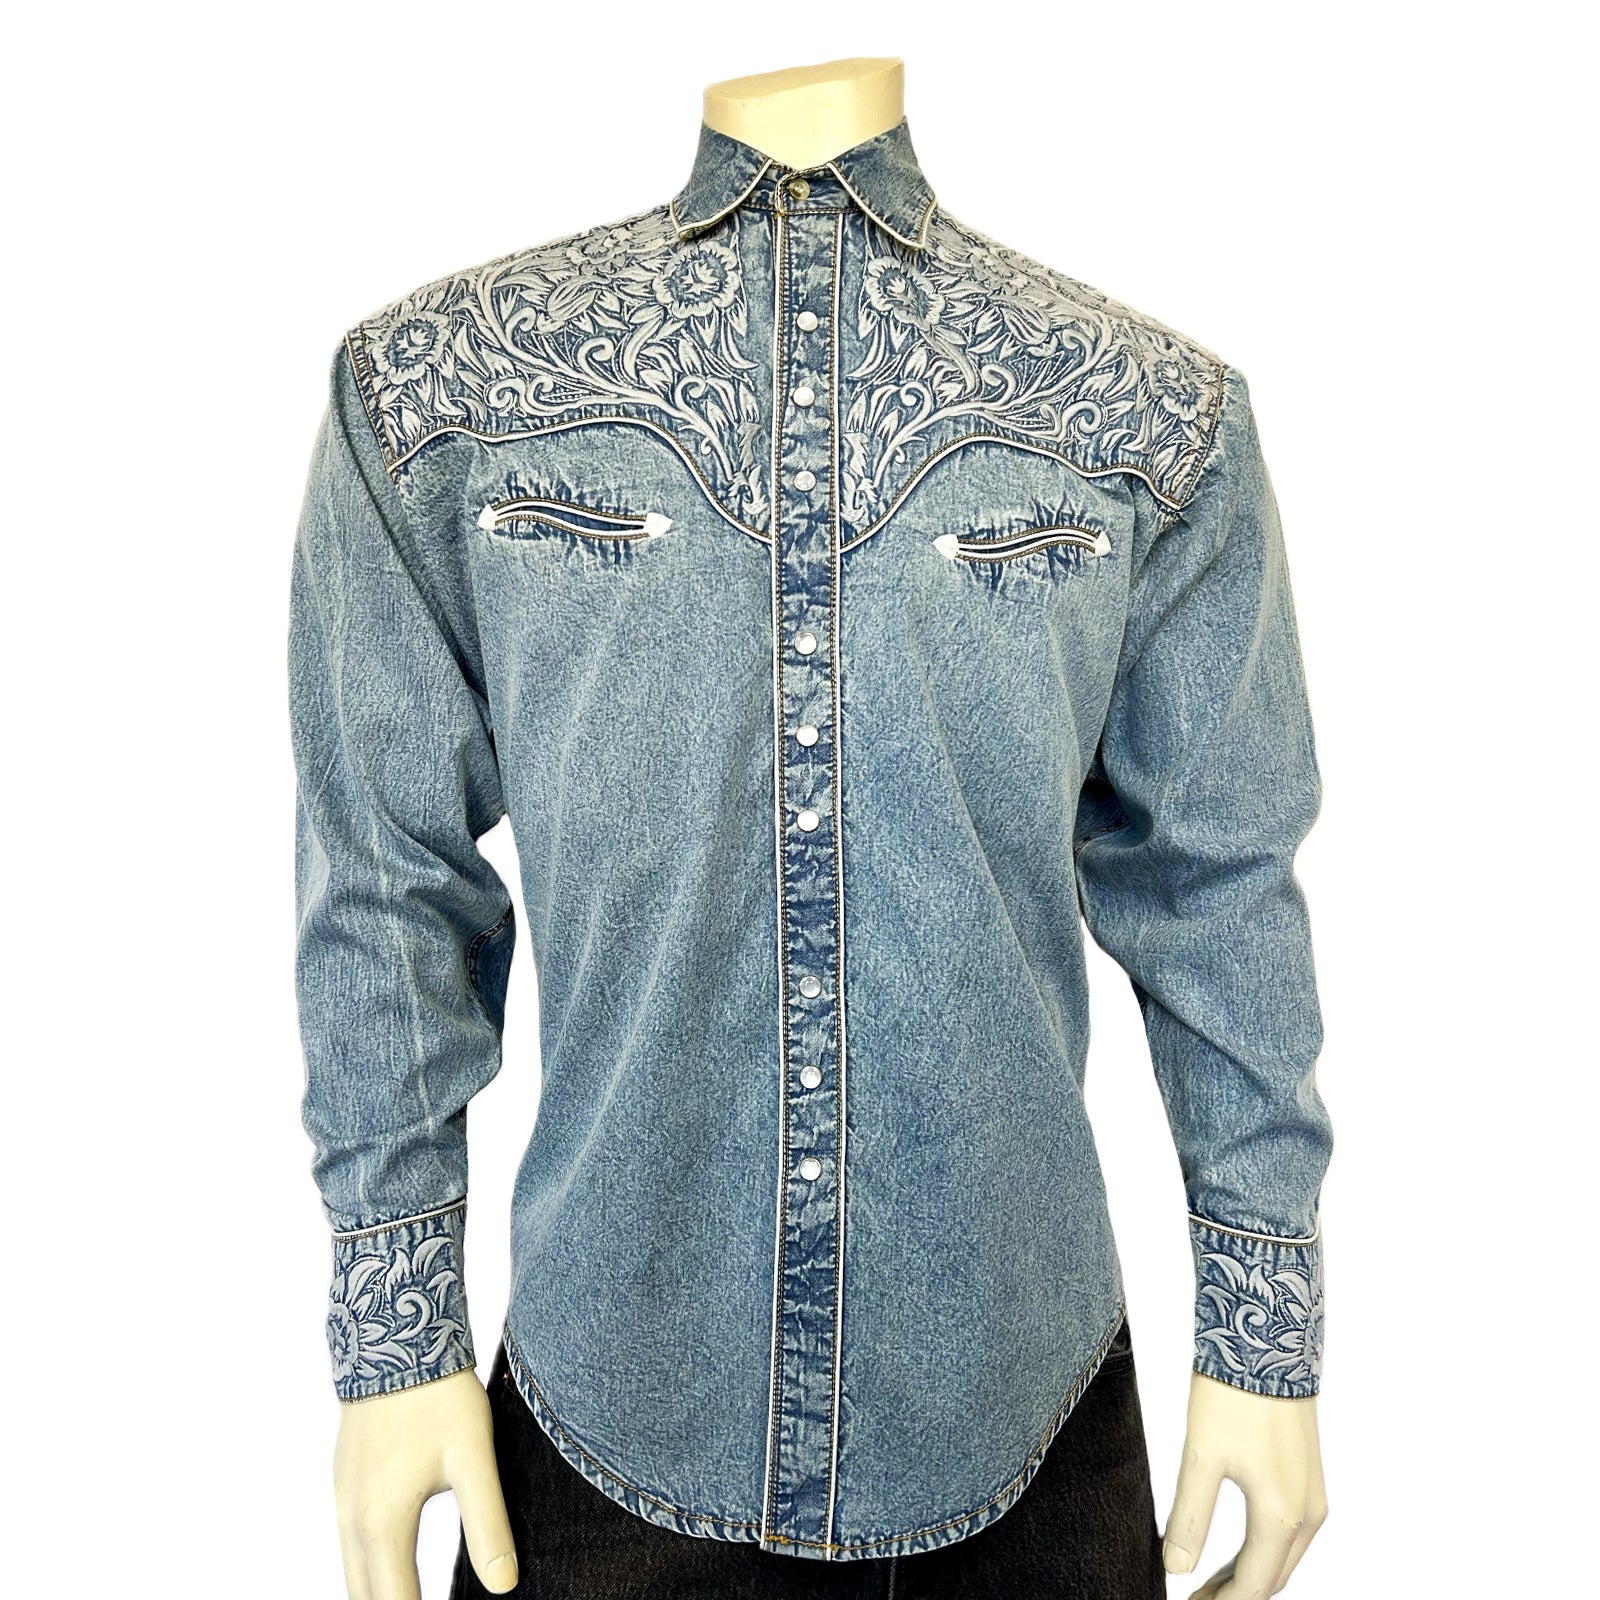 Men's Vintage Tooling Embroidered Denim & Blue Western Shirt